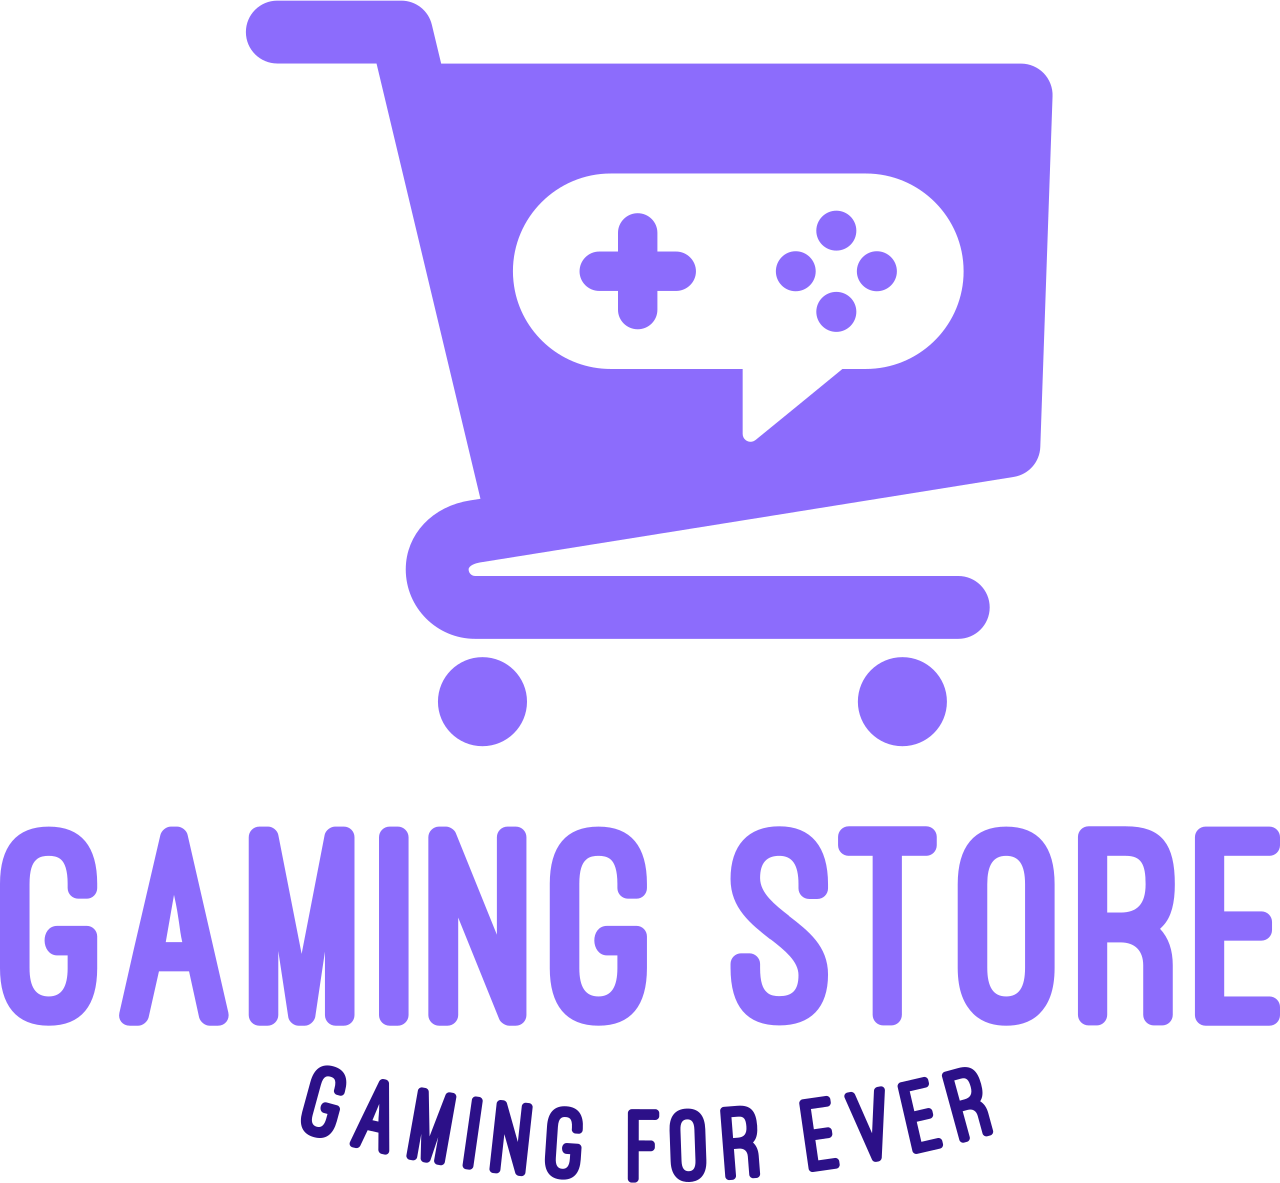 Gaming Store's logo